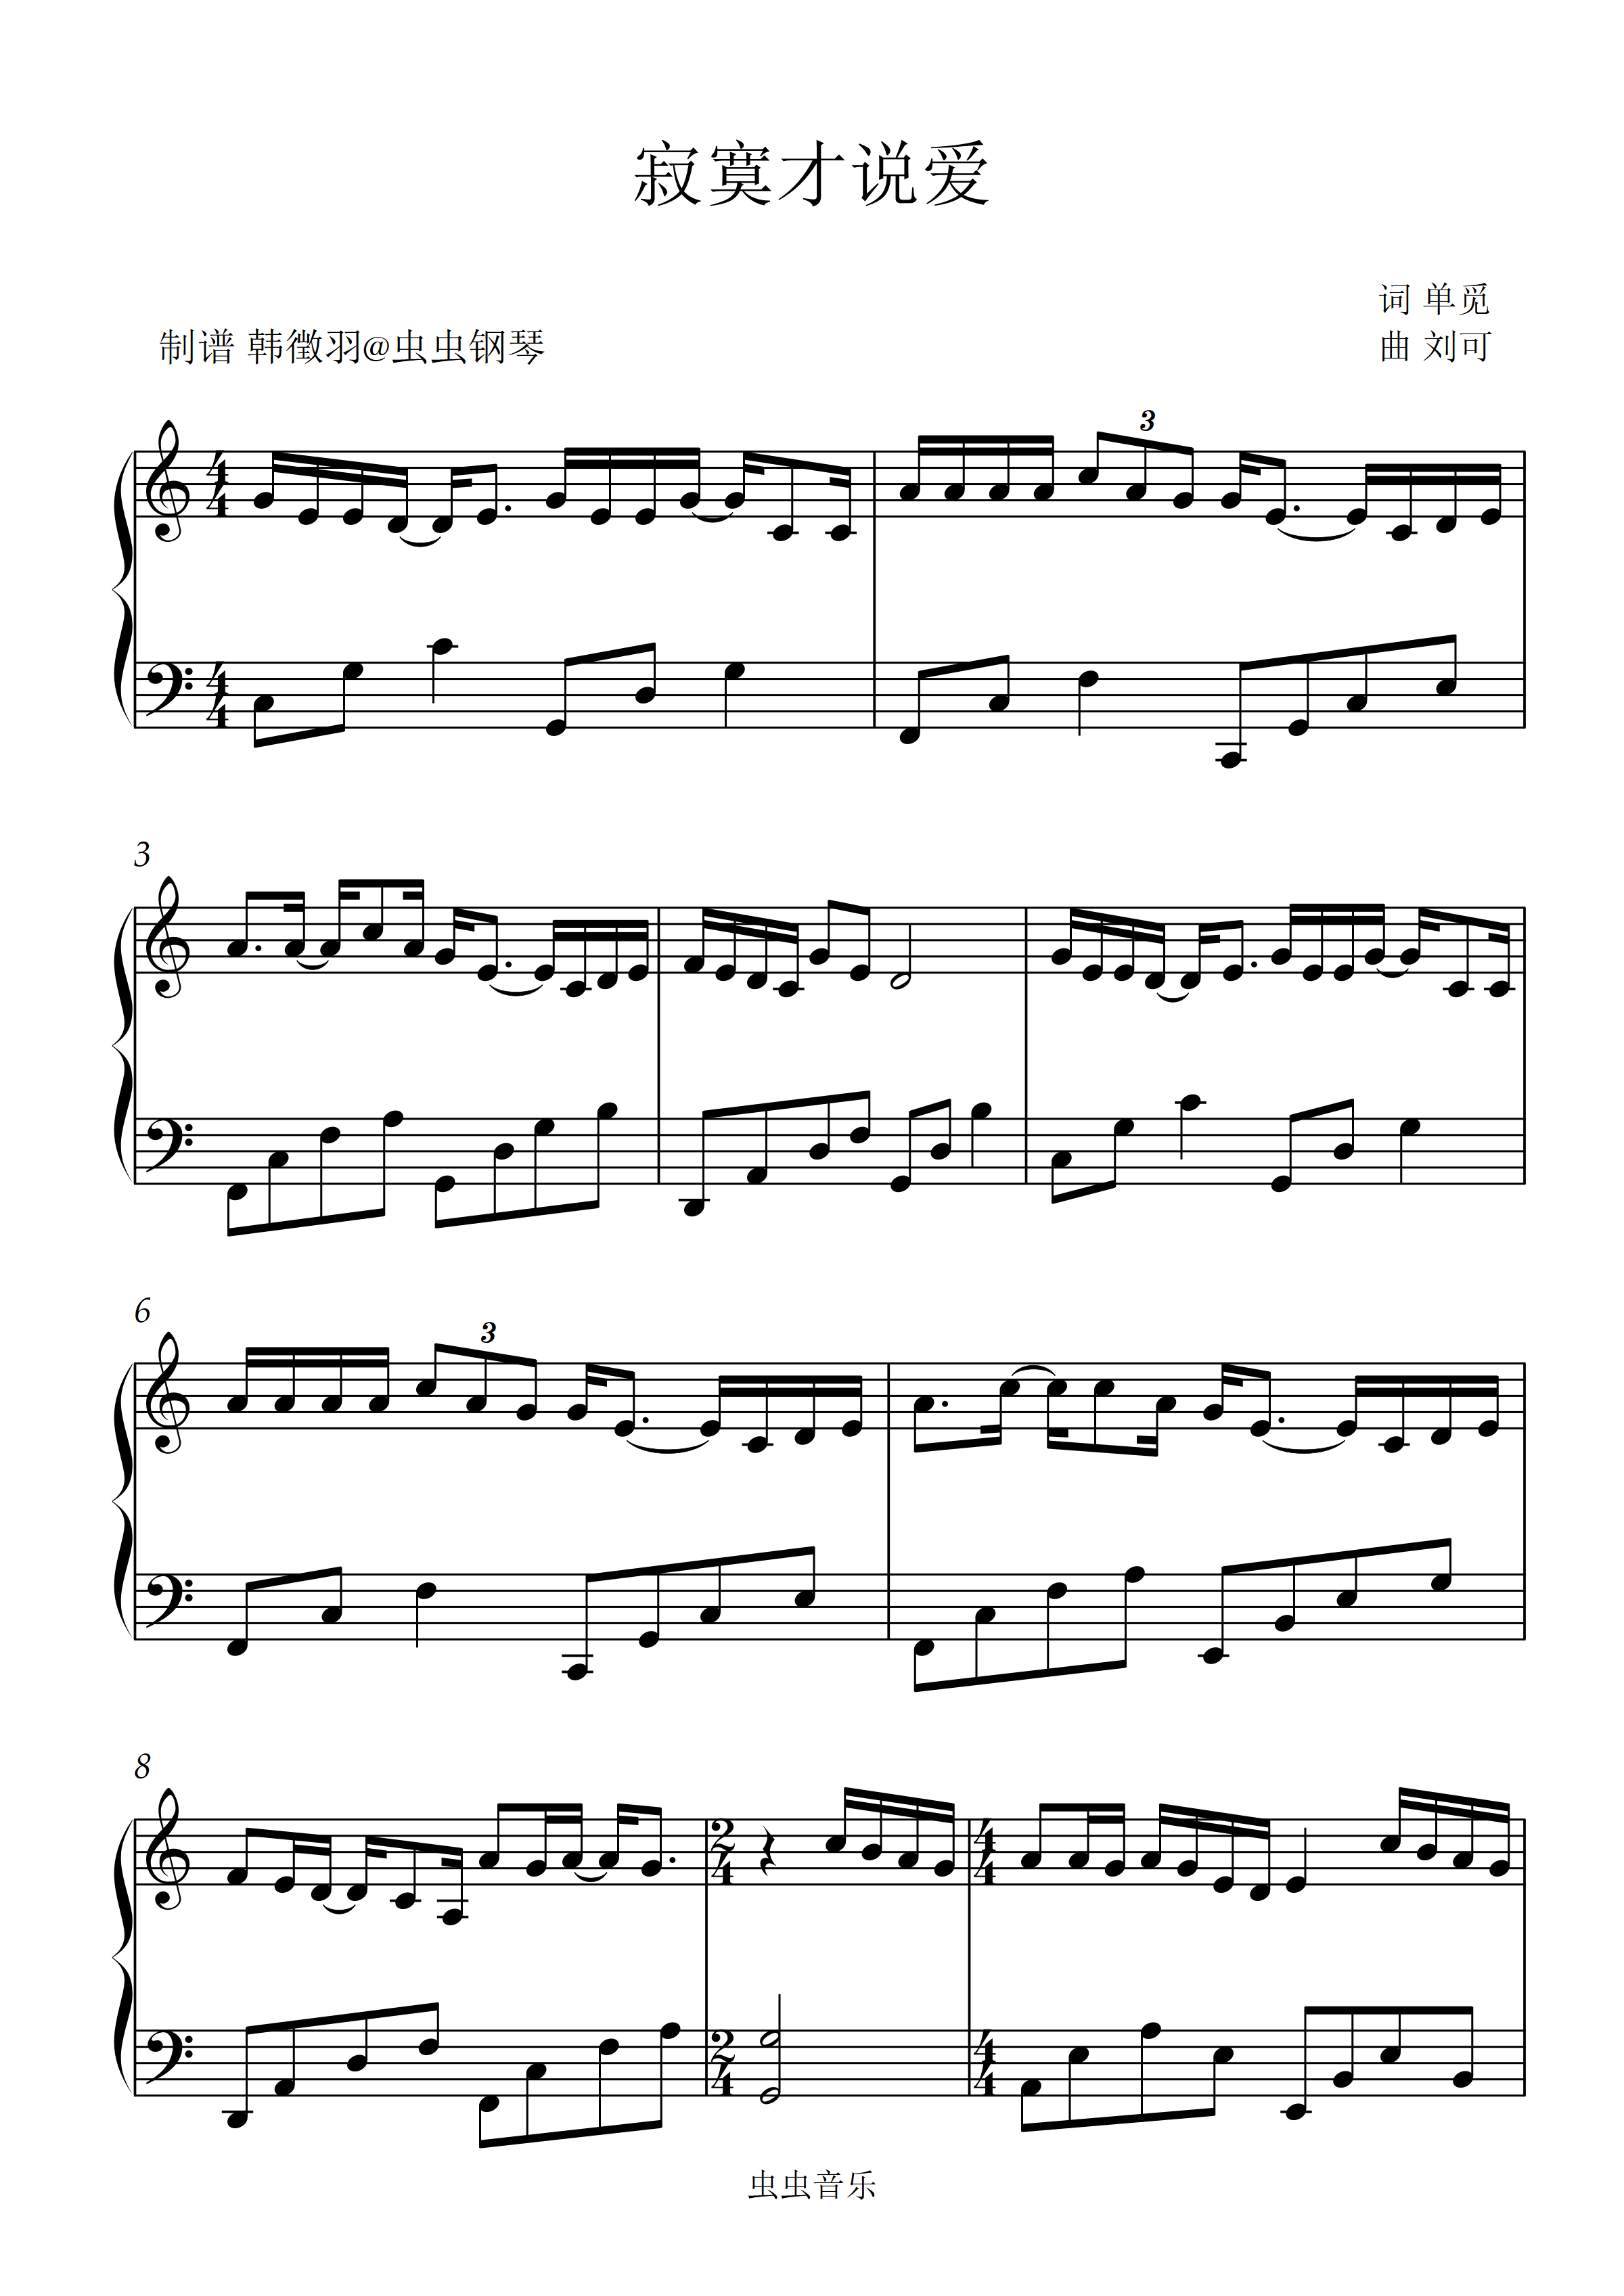 寂寞才说爱-刘可双手简谱预览1-钢琴谱文件（五线谱、双手简谱、数字谱、Midi、PDF）免费下载